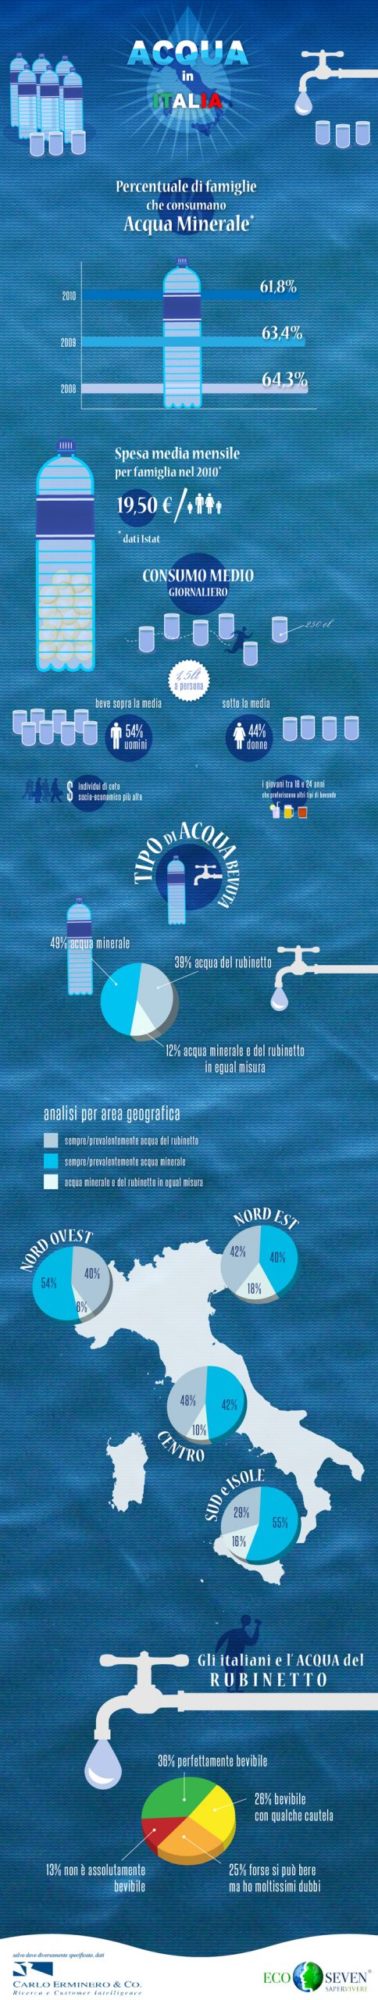 infografica acqua minerale